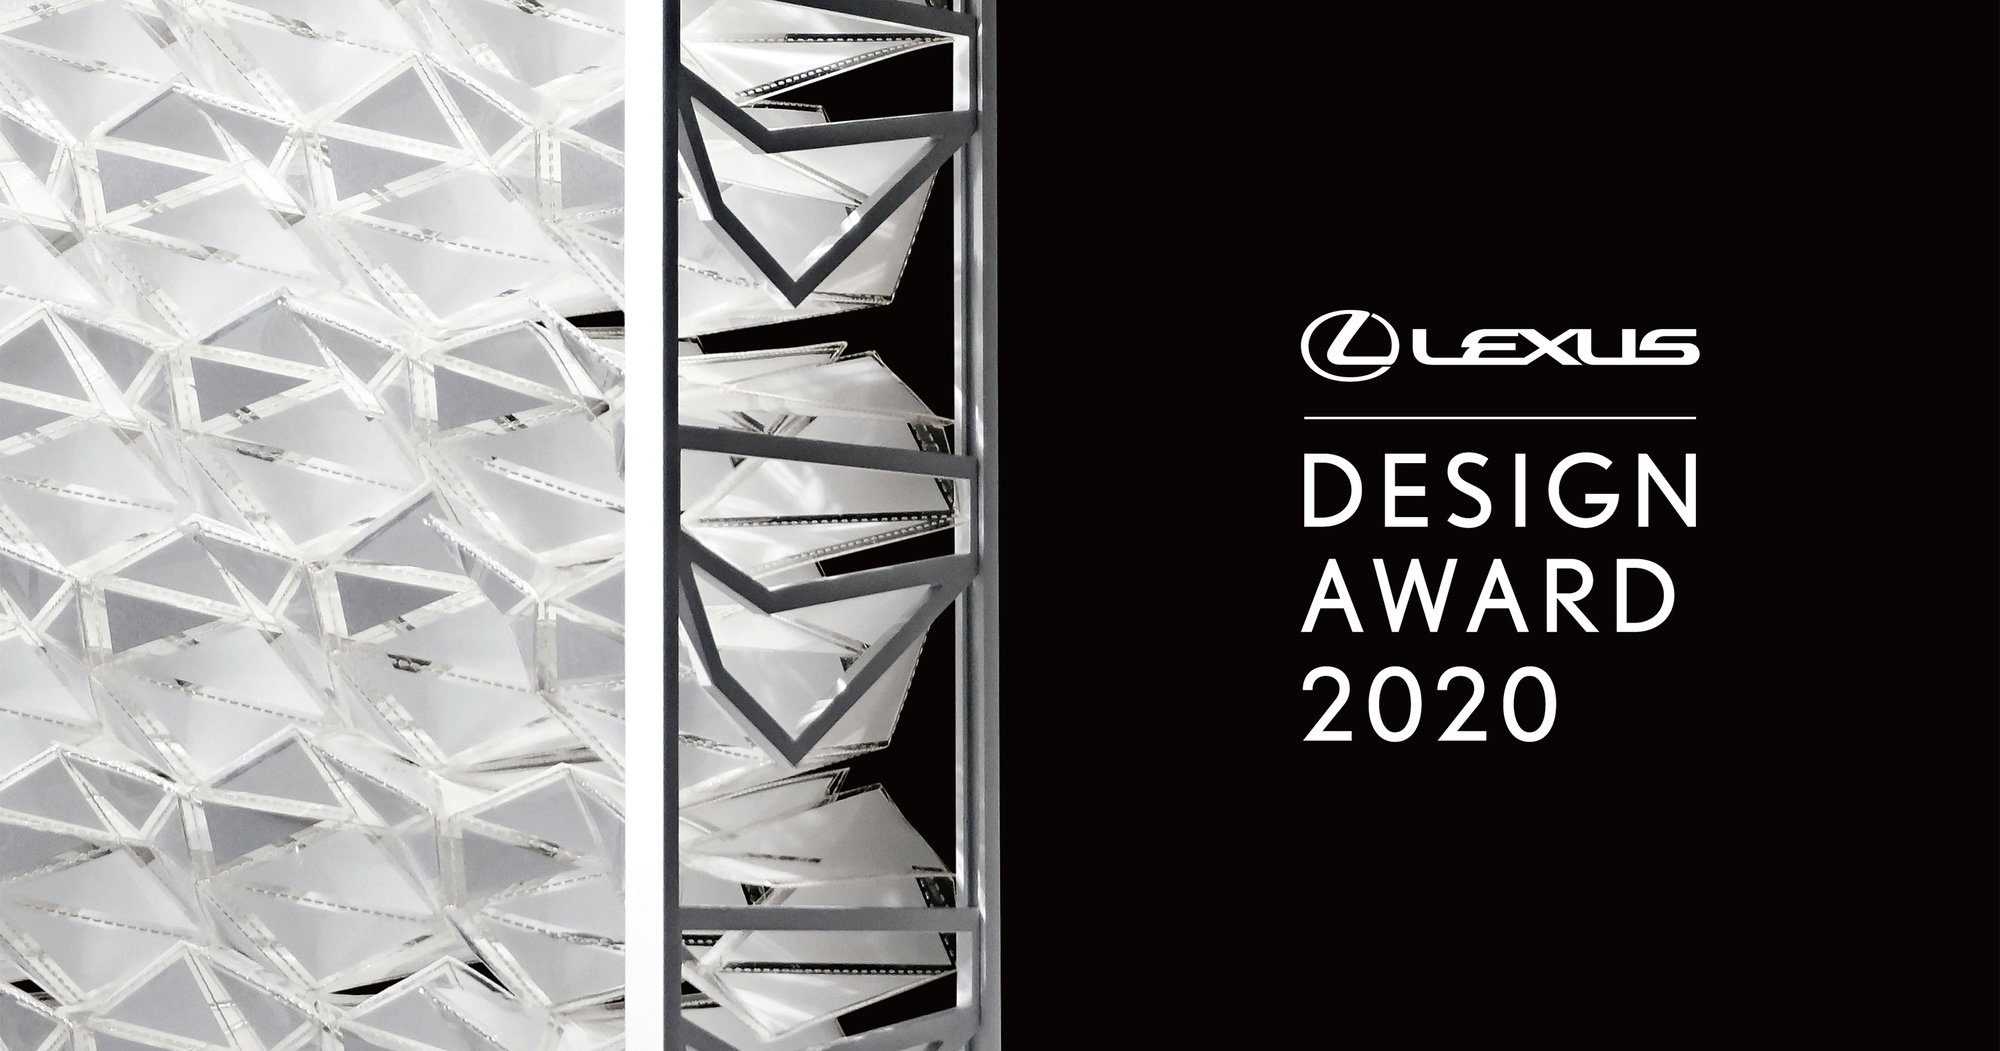 Galería: Lexus anuncia los finalistas al premio Lexus Design Award 2020. Seis soluciones innovadoras para un futuro mejor